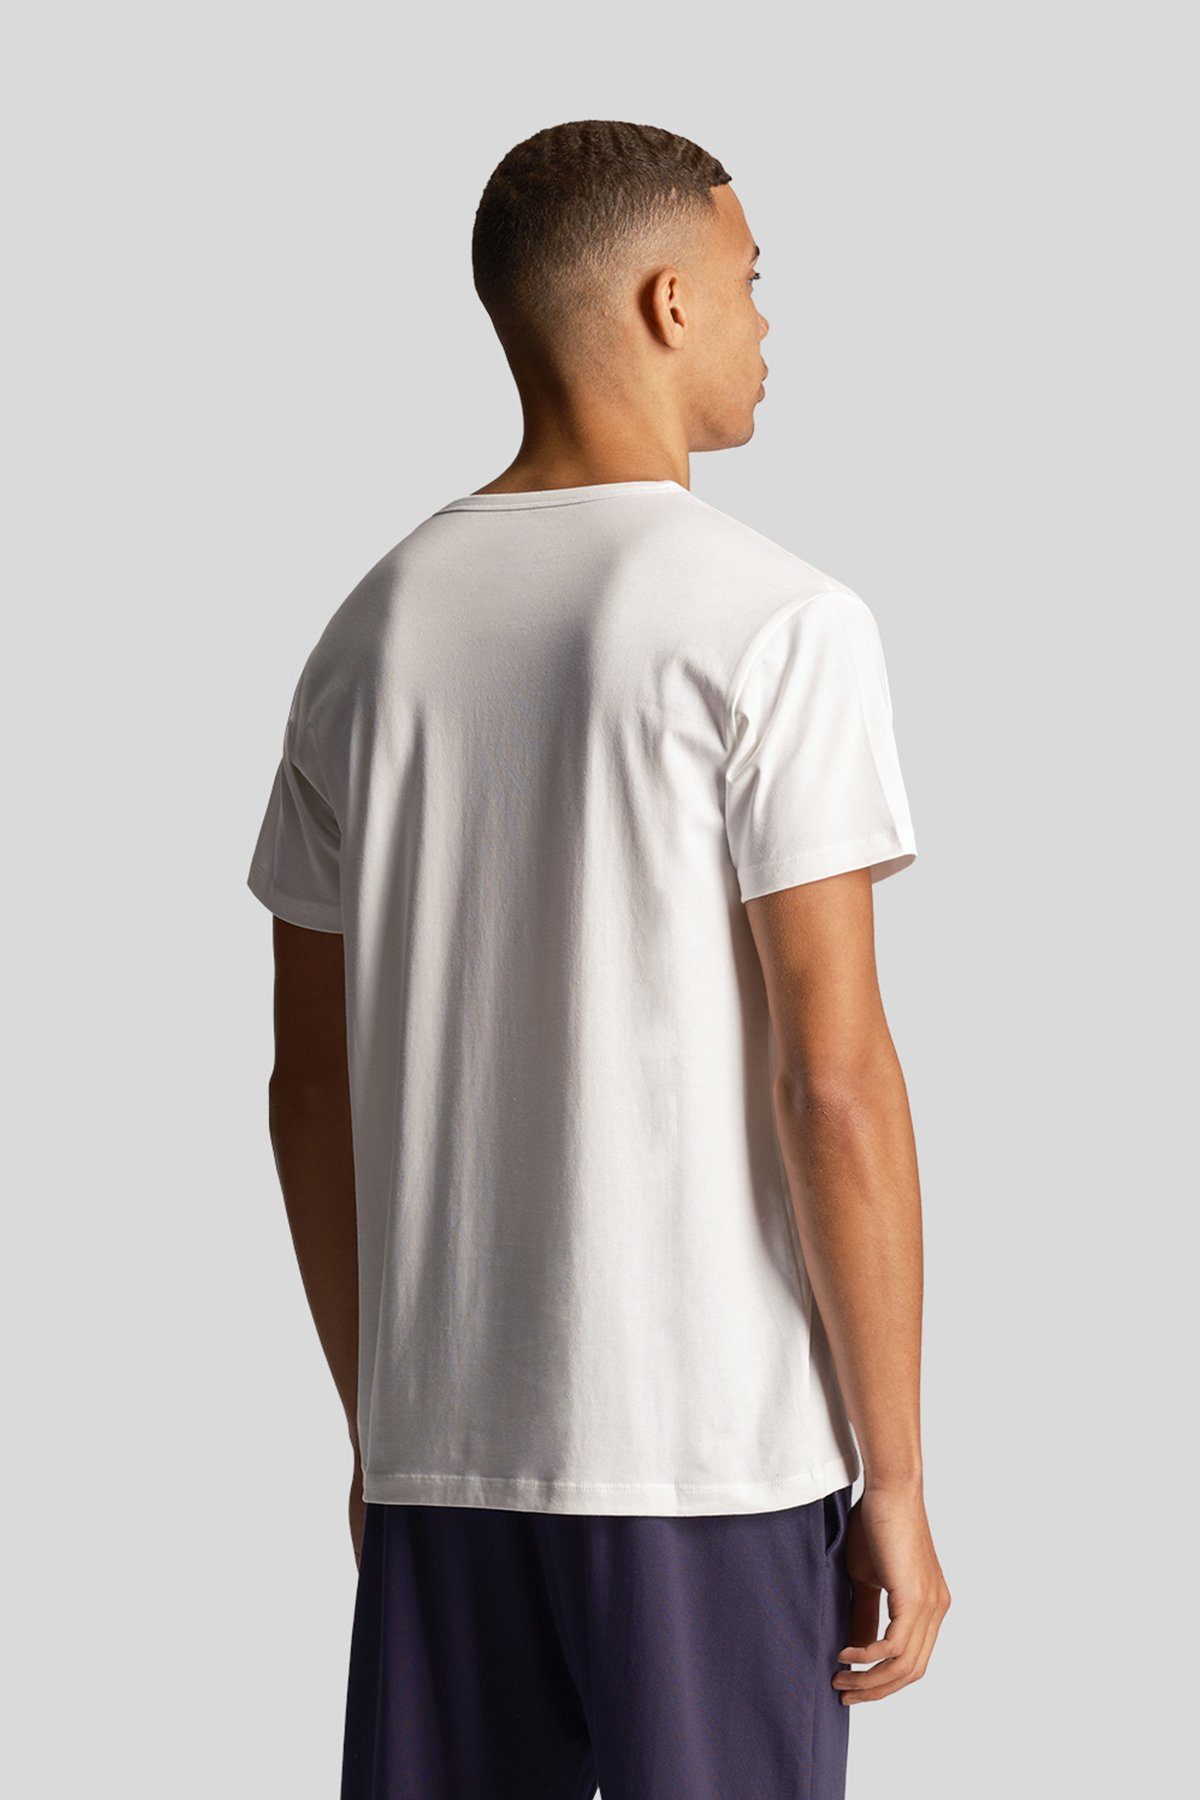 Farben Mittelgrau Weiß Lyle (3Er-Set) T-Shirt & Scott meliert/ Basic Tiefschwarz/